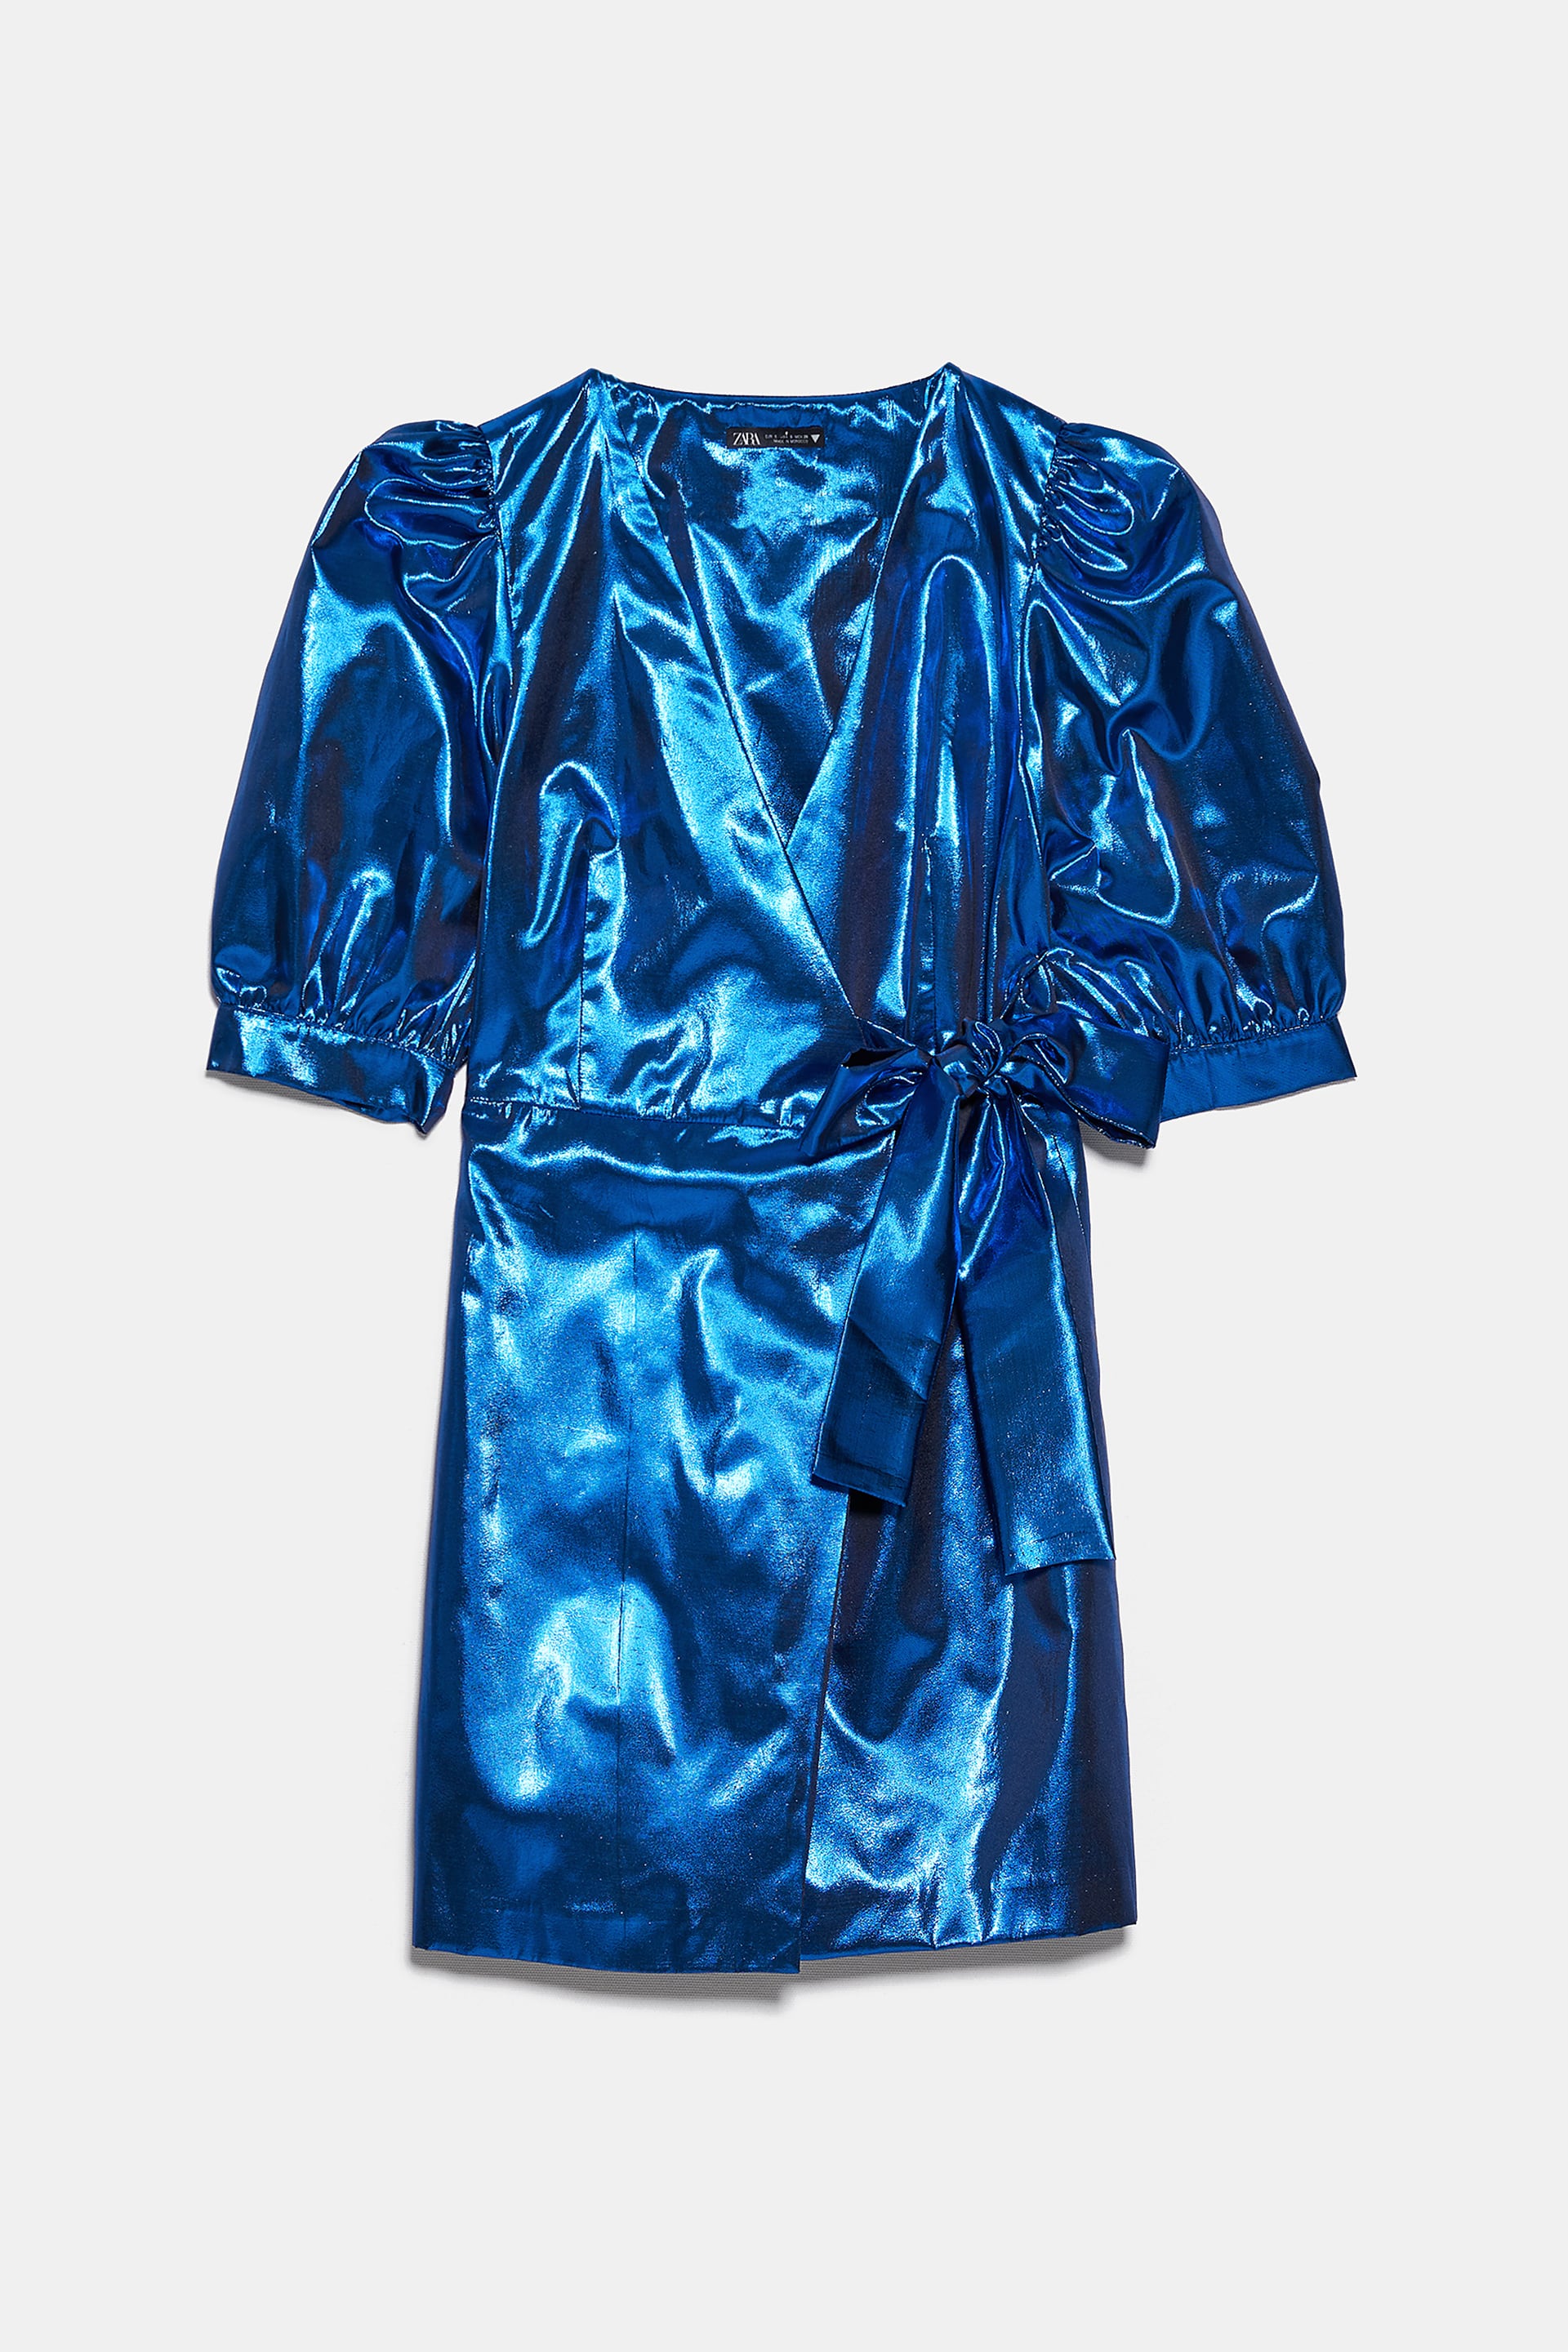 Zara + Zara Metallic Dress